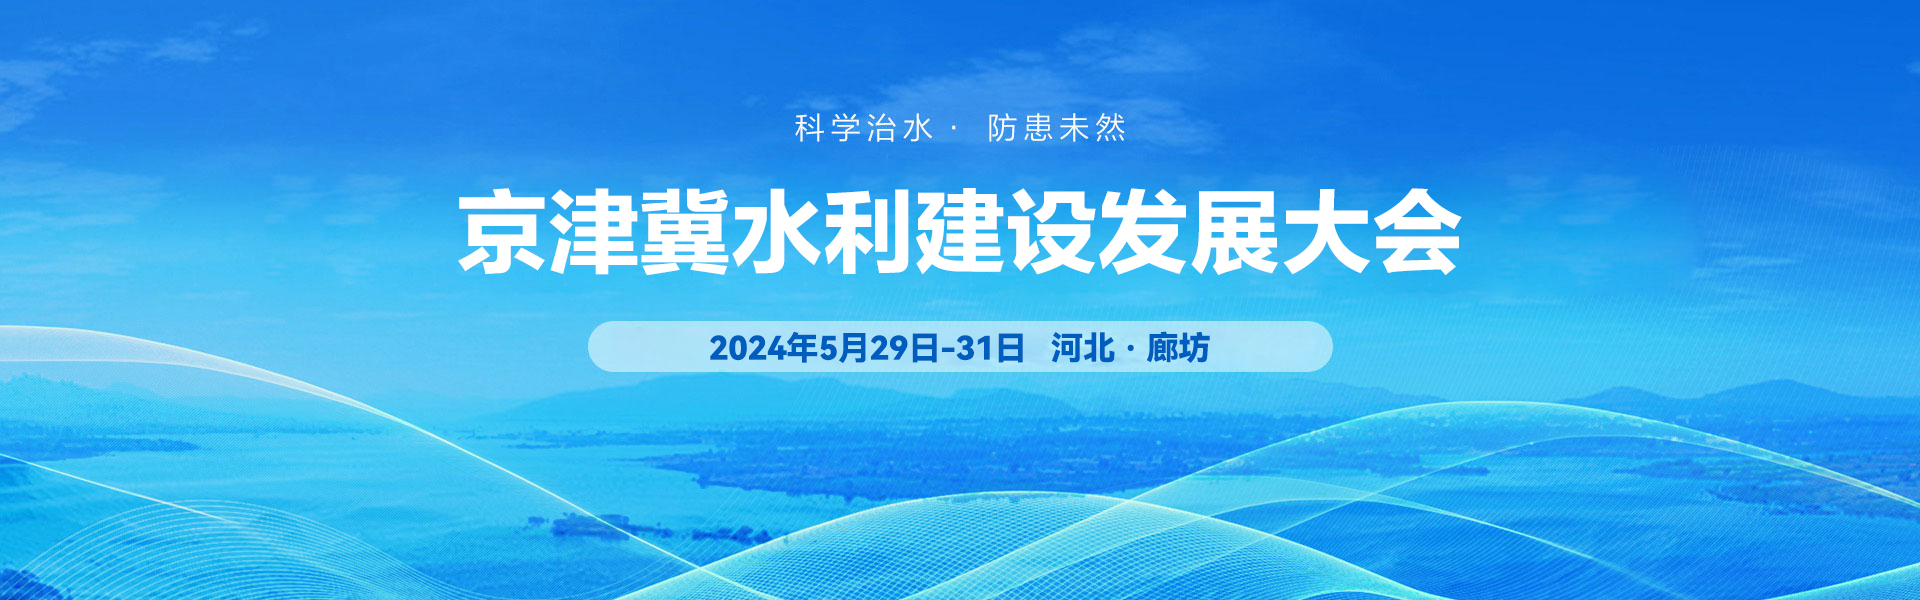 2024京津冀水利工程建设与防汛应急装备展览会